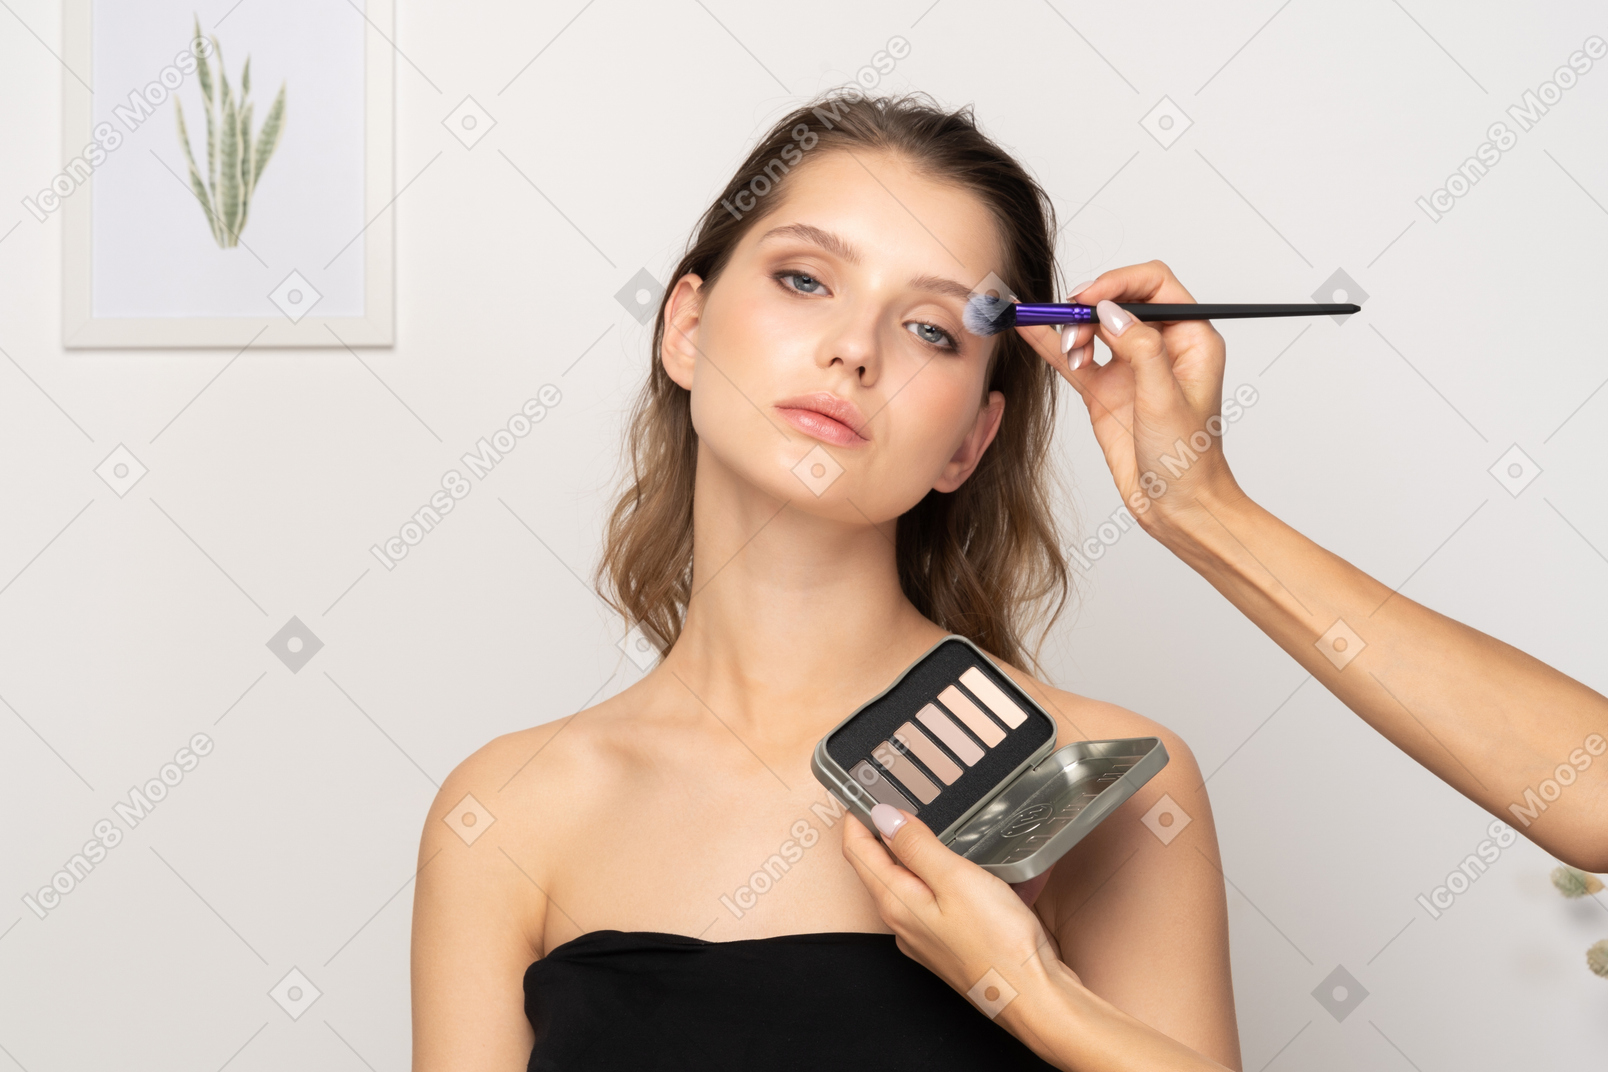 Vista frontal de una maquilladora haciendo maquillaje de ojos para una modelo femenina